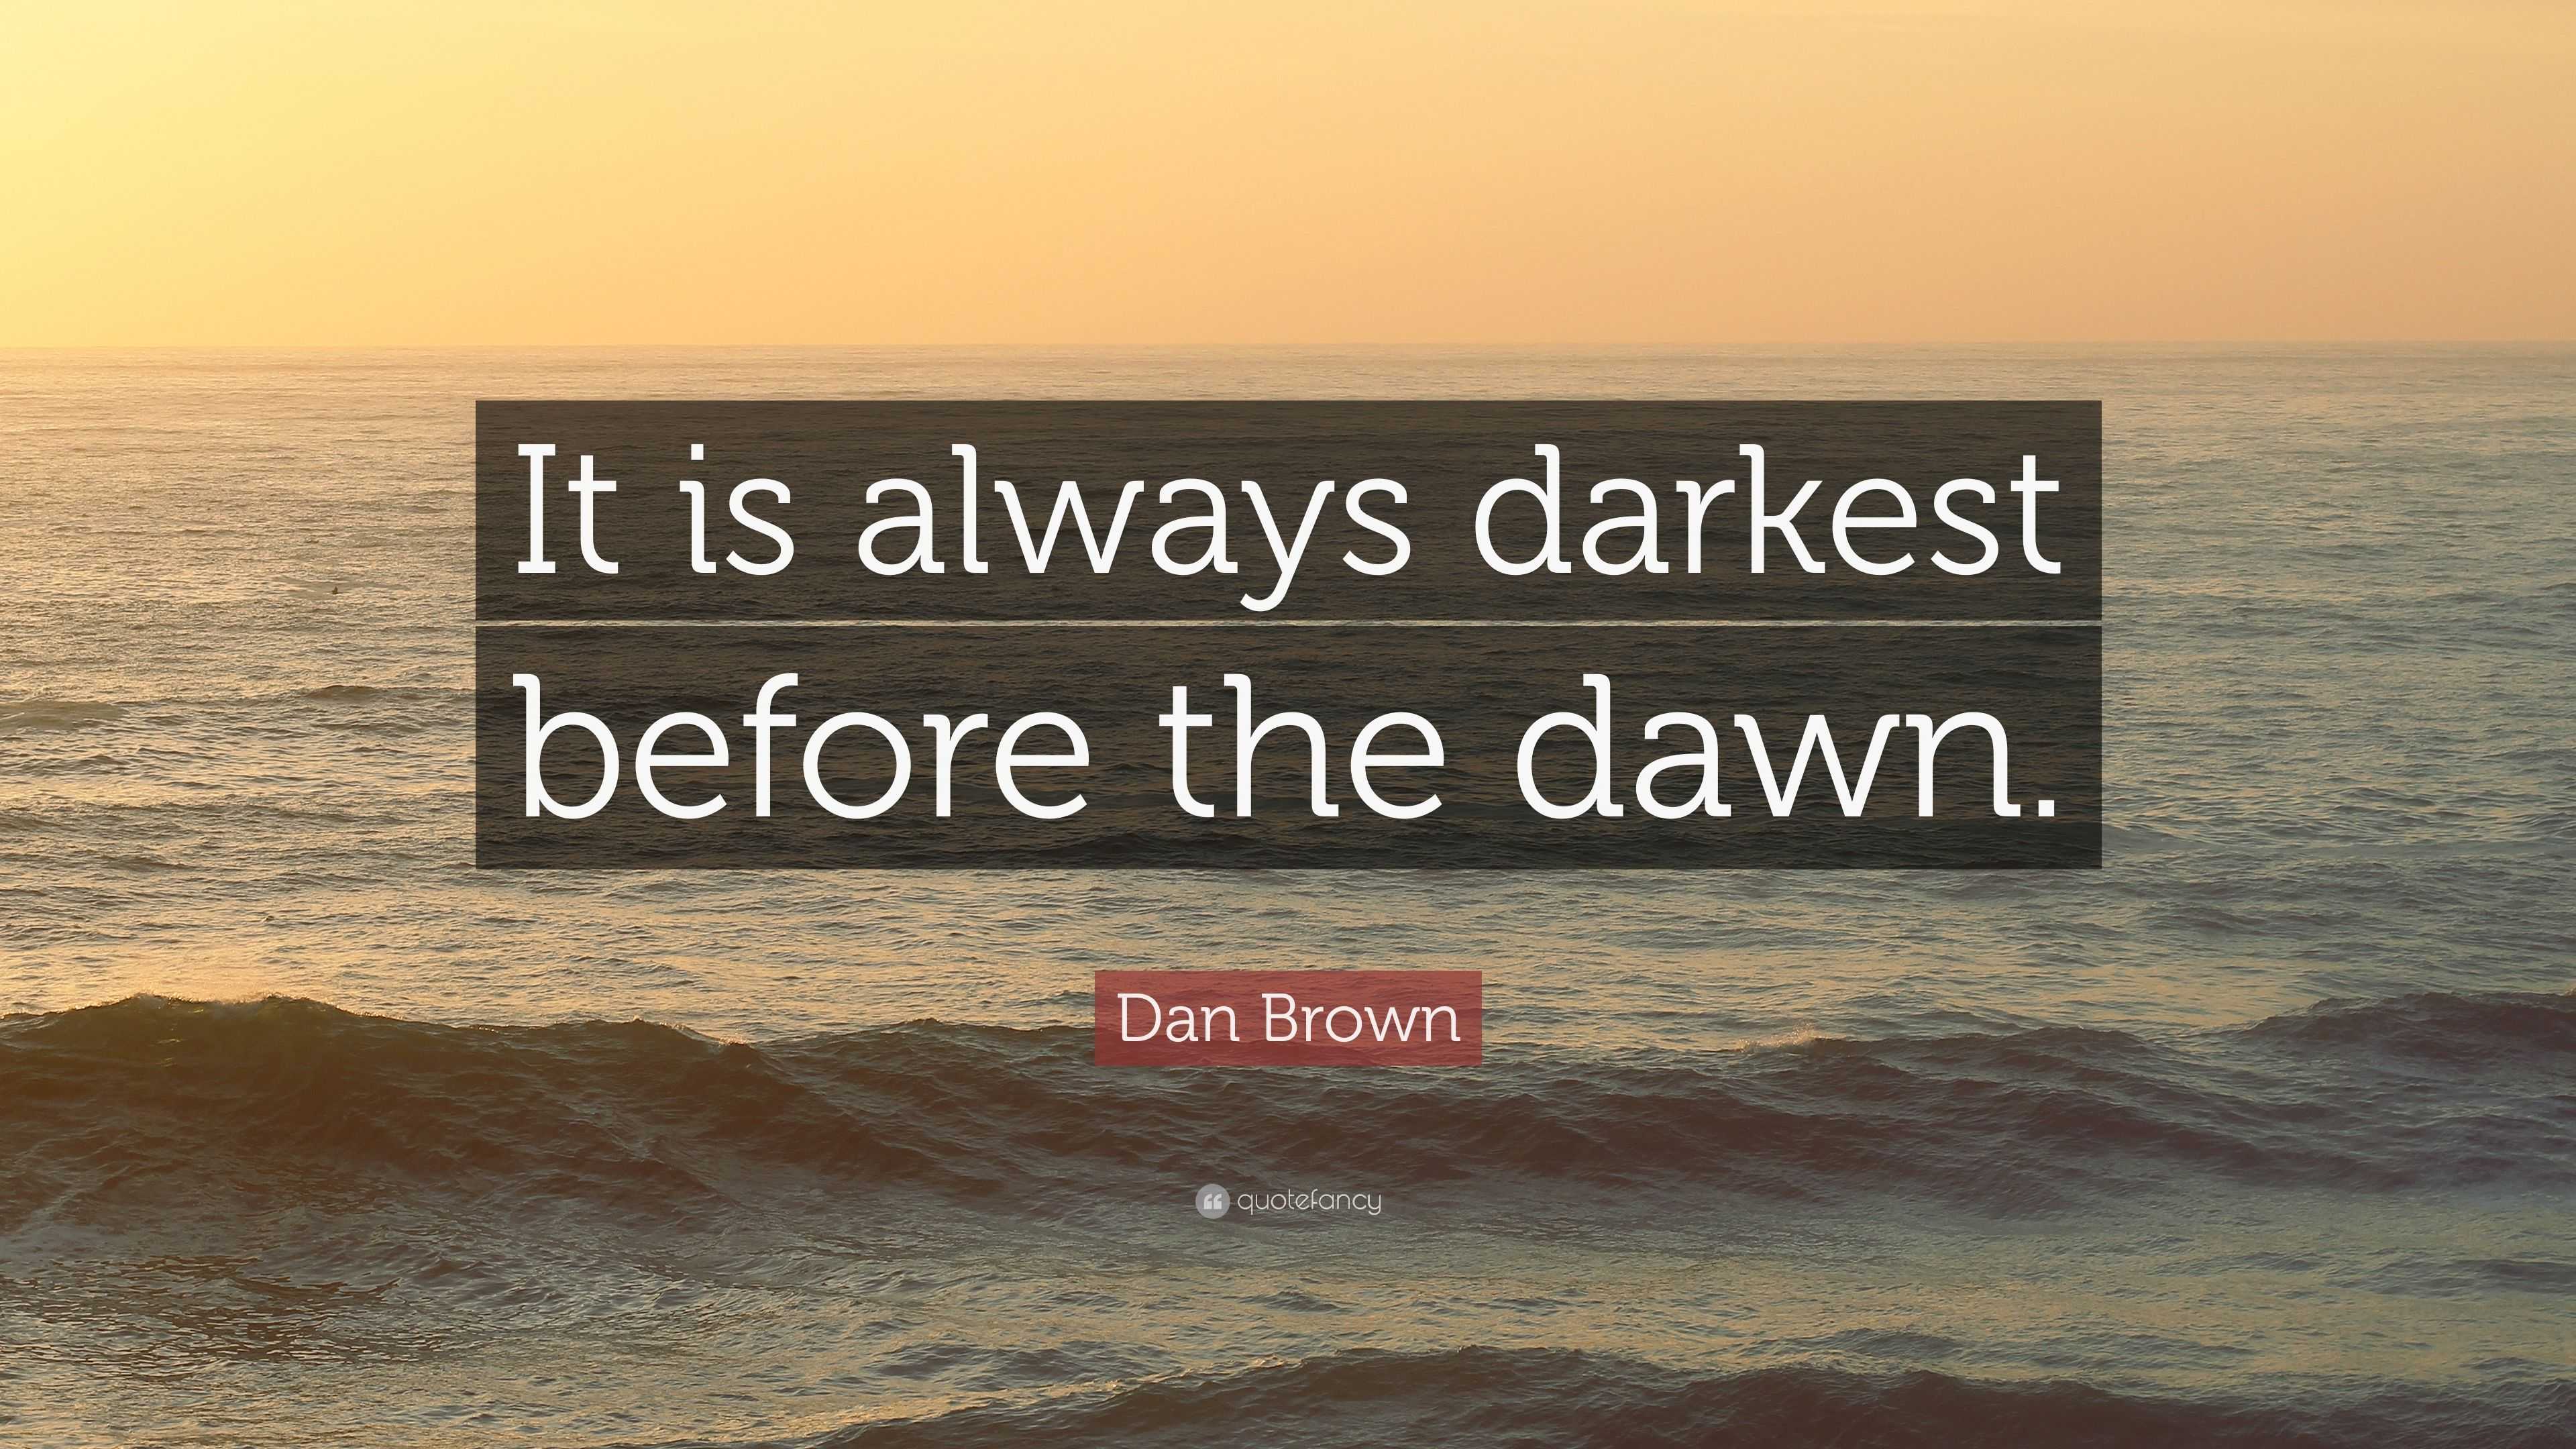 Dan Brown Quote: “It is always darkest before the dawn.”